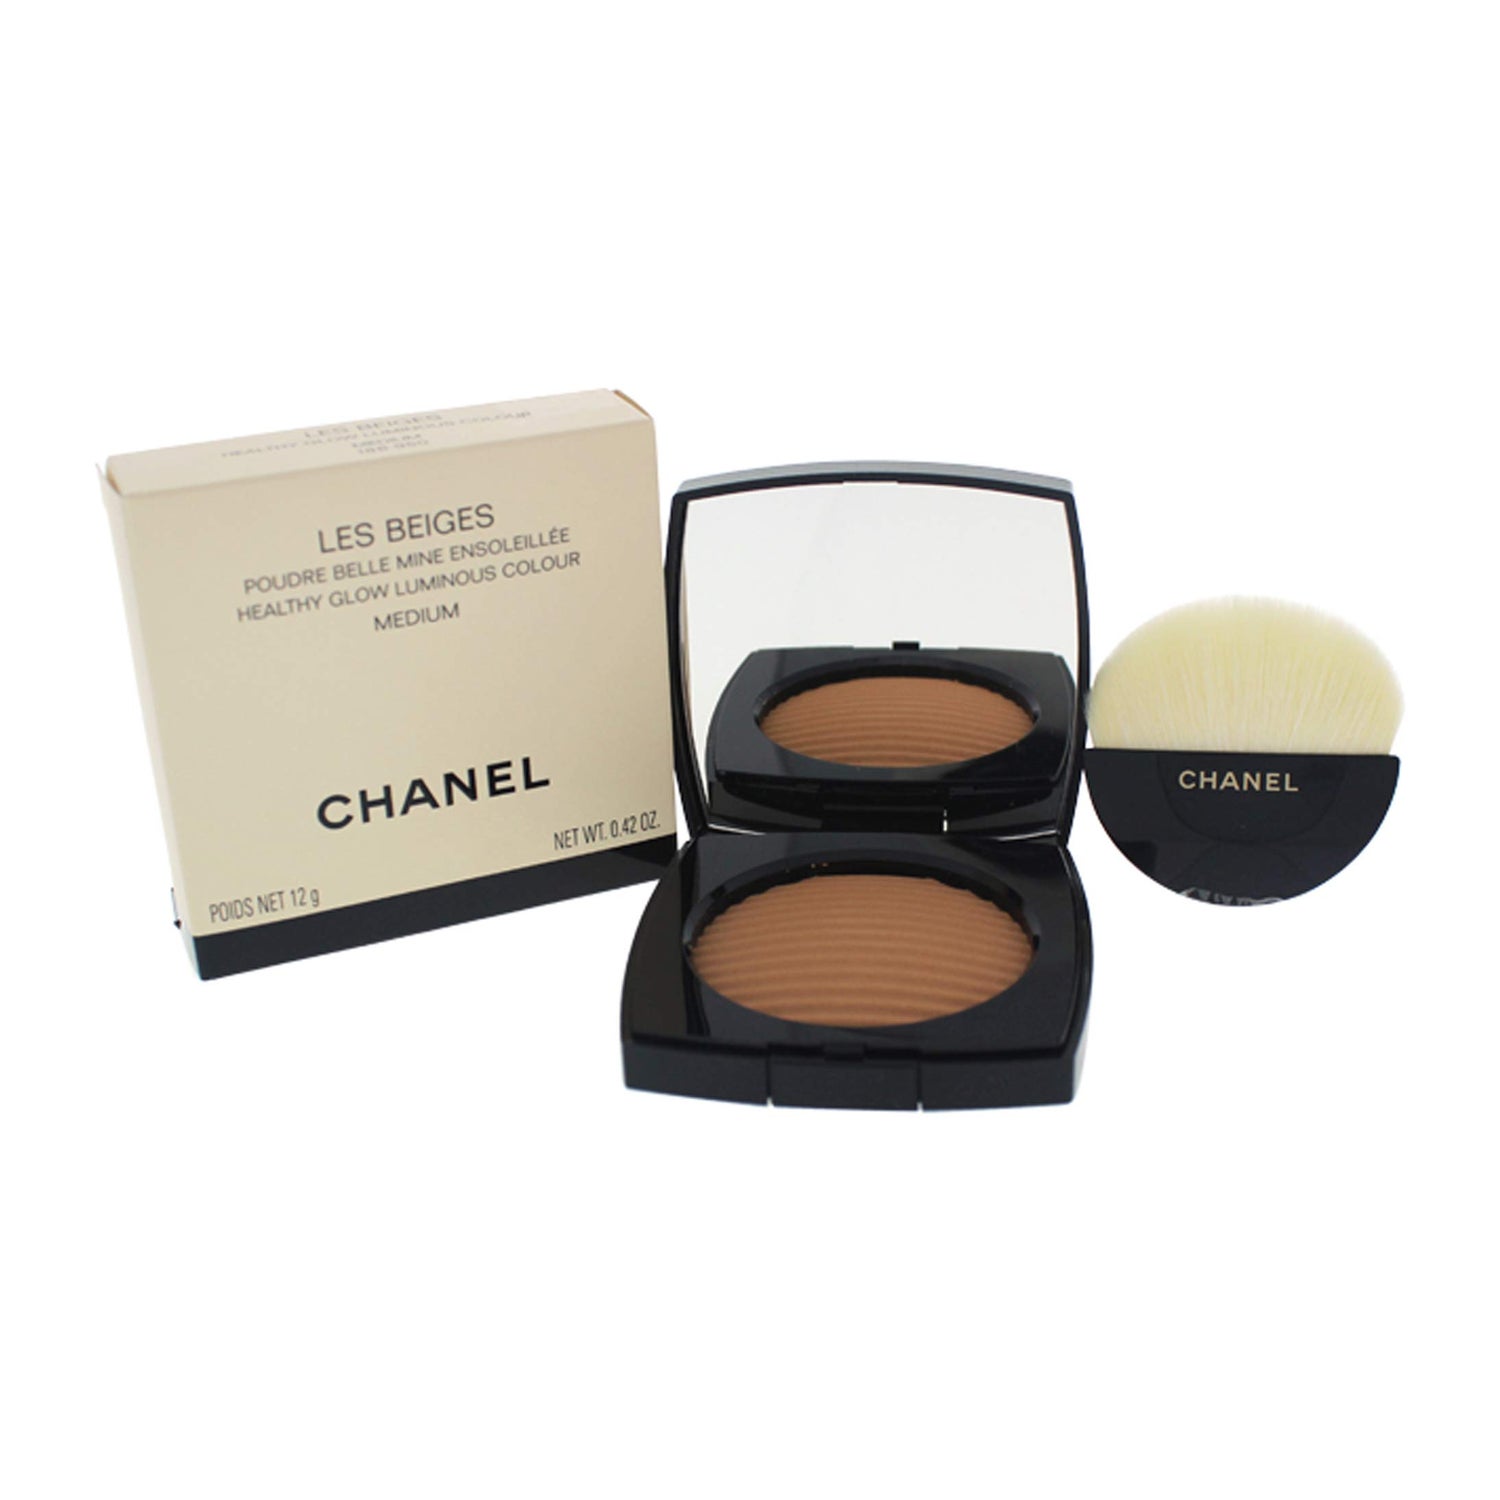 Chanel - Les Beiges Healthy Glow Luminous Colour 12g/0.42oz